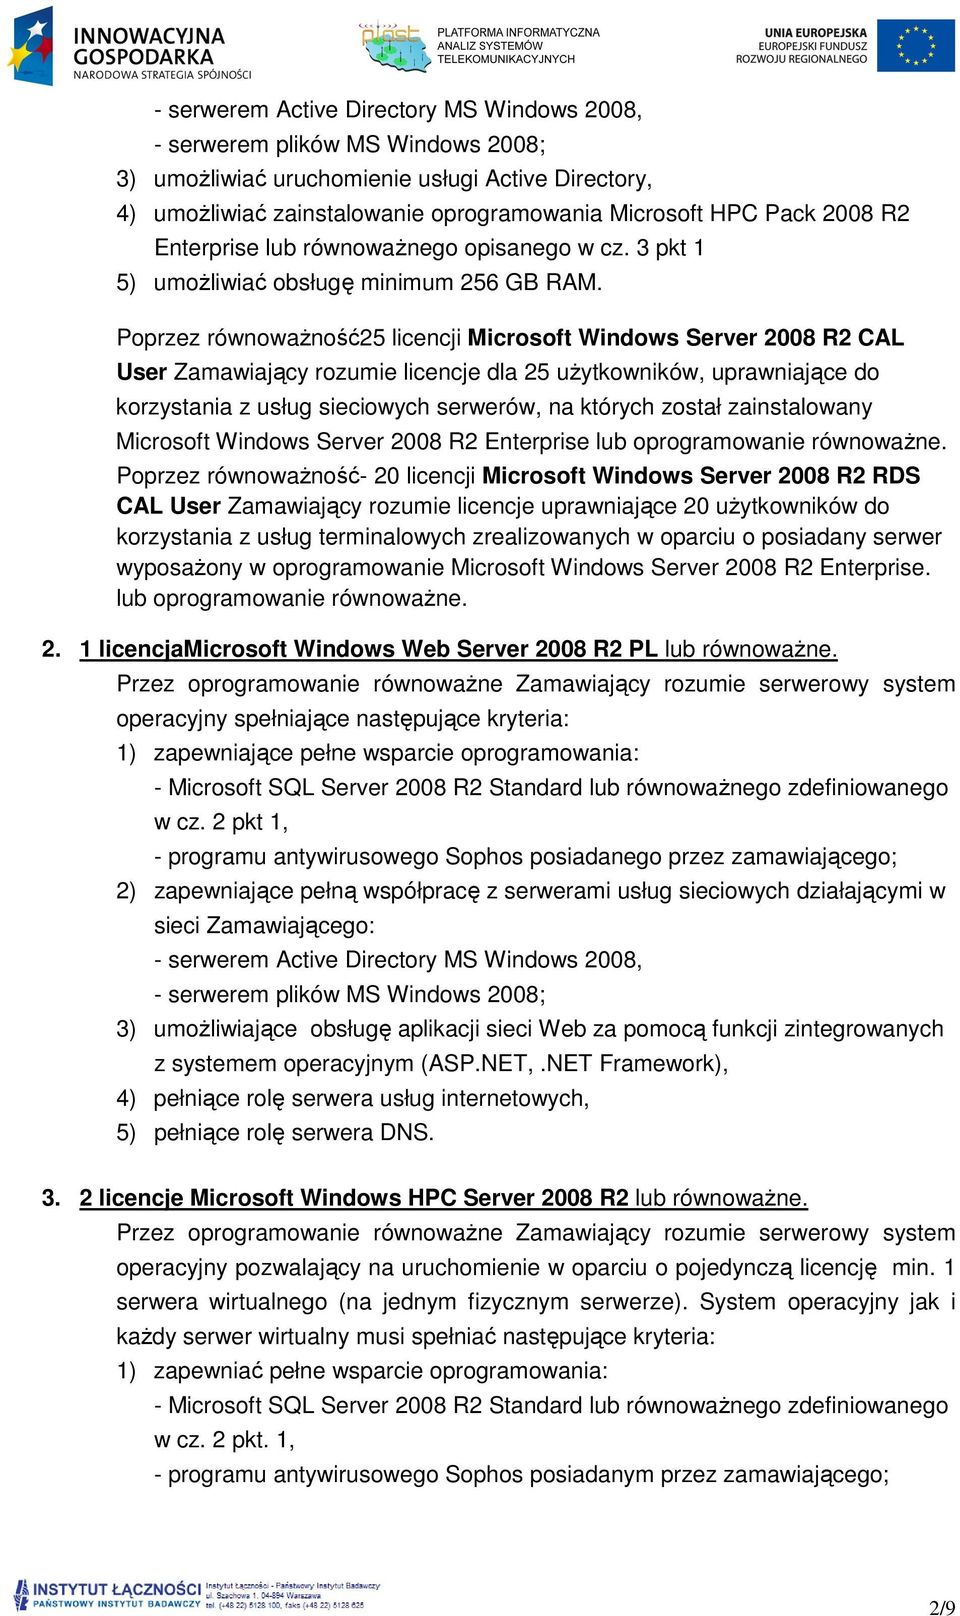 Poprzez równoważność25 licencji Microsoft Windows Server 2008 R2 CAL User Zamawiający rozumie licencje dla 25 użytkowników, uprawniające do korzystania z usług sieciowych serwerów, na których został